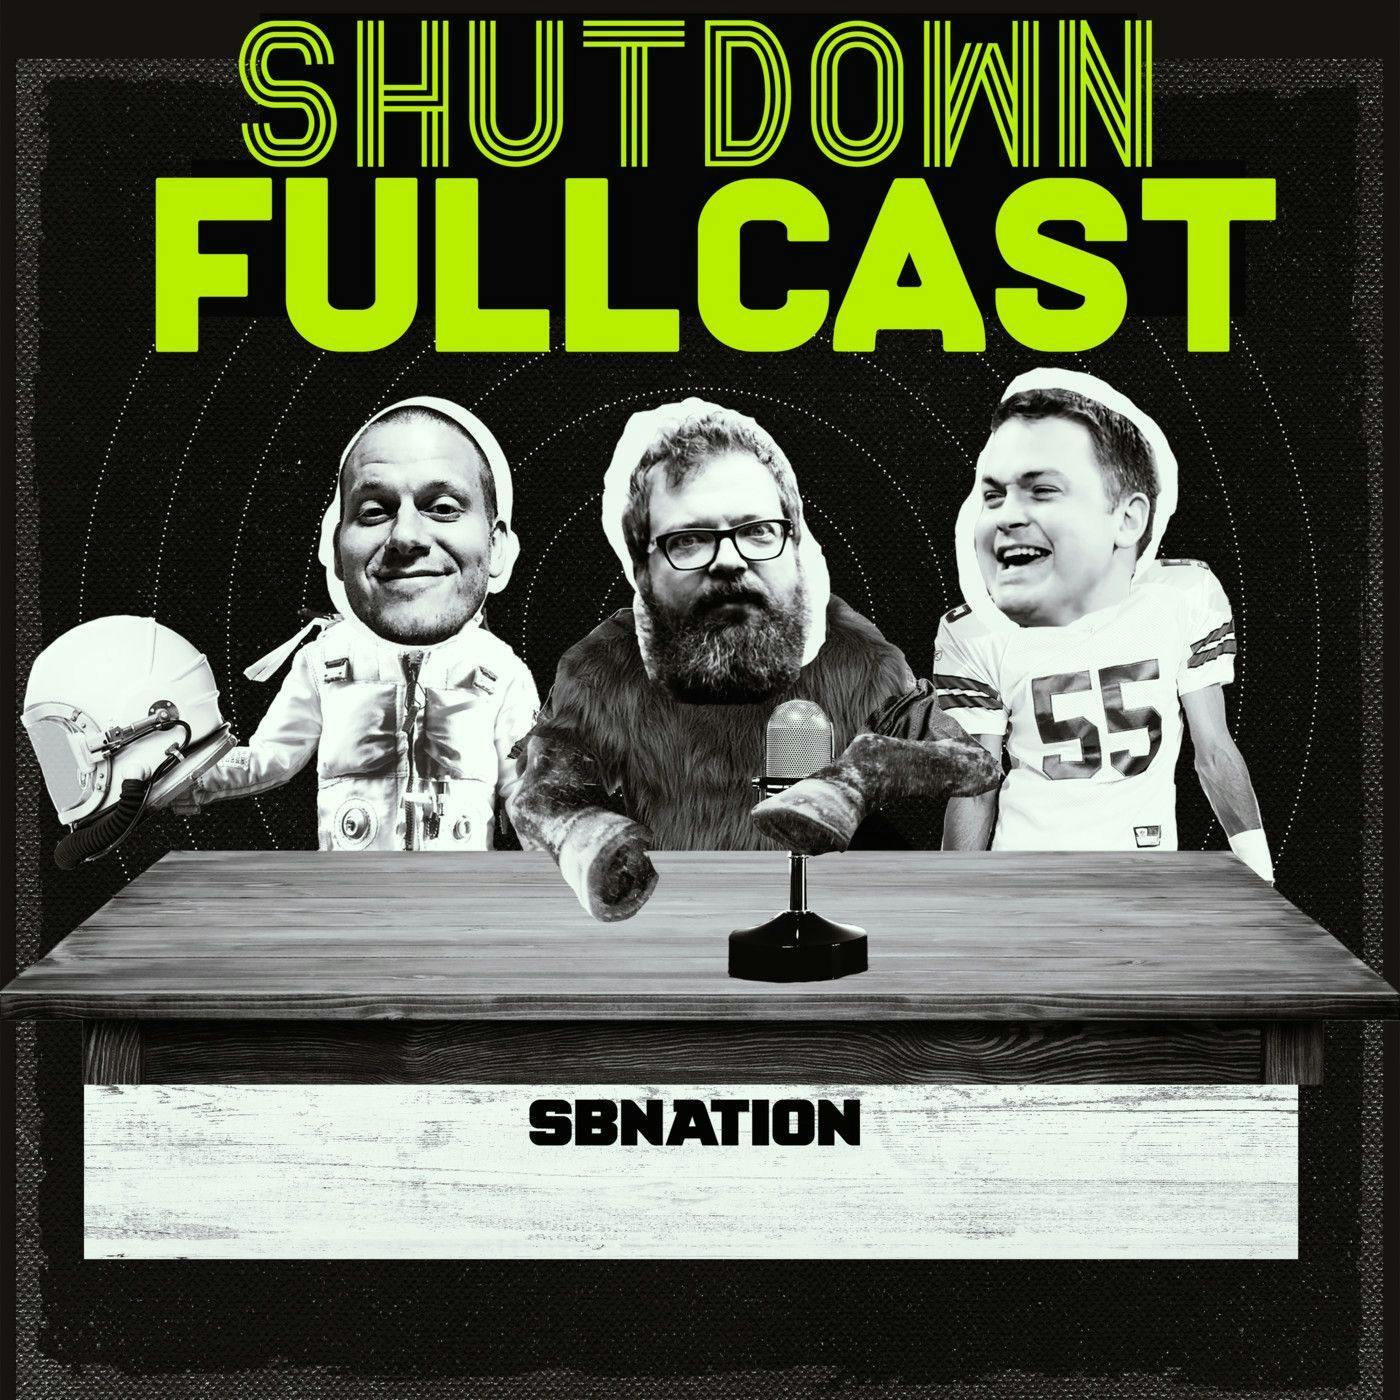 Shutdown Fullcast 40 for 40: The 2017 Taxslayer Bowl